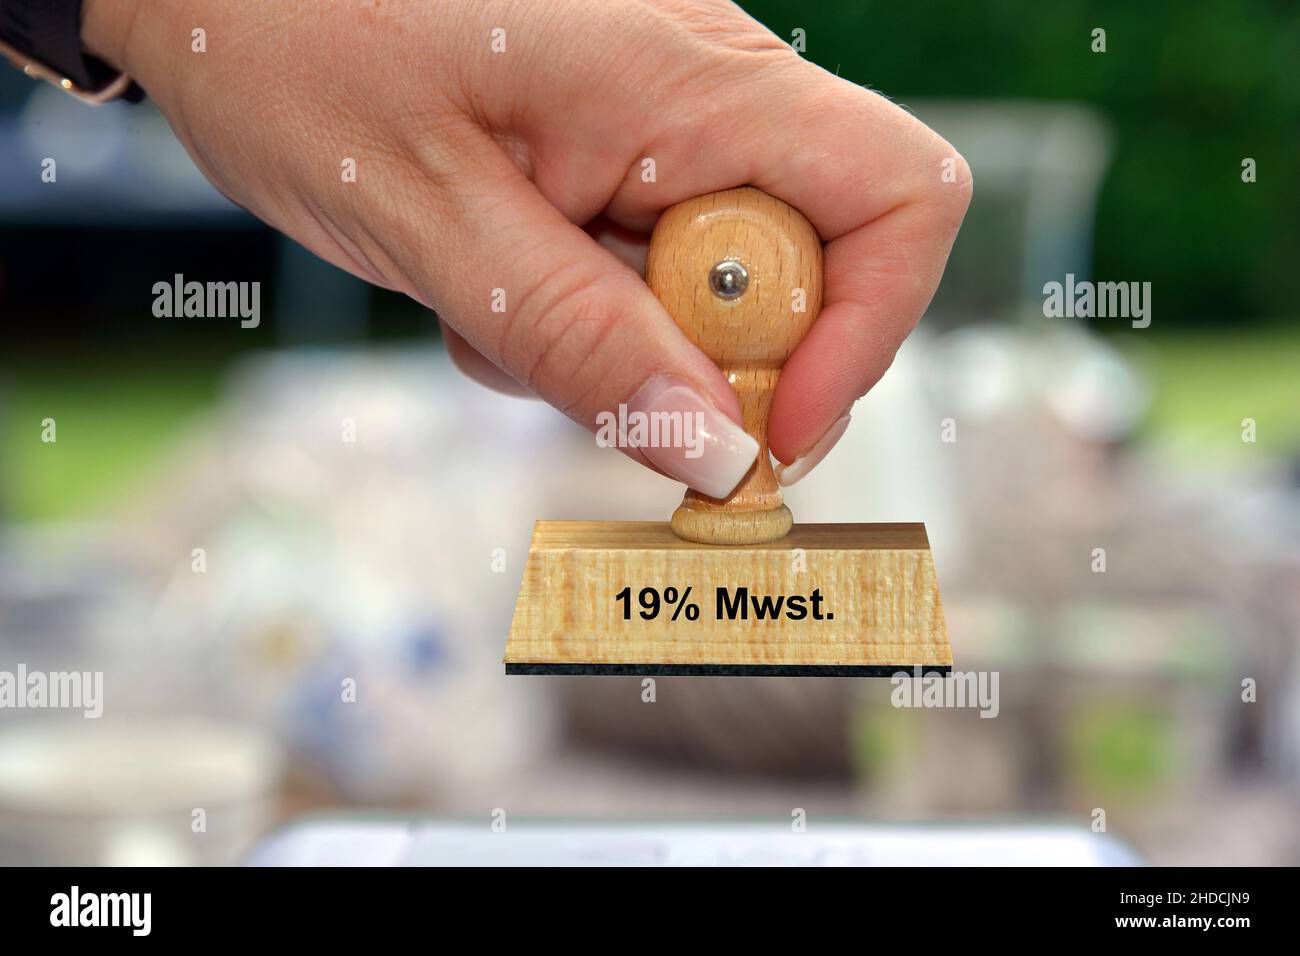 Stempel, Holzstempel, Aufschrift, 19% Mwst., Mehrwertsteuer, Stock Photo